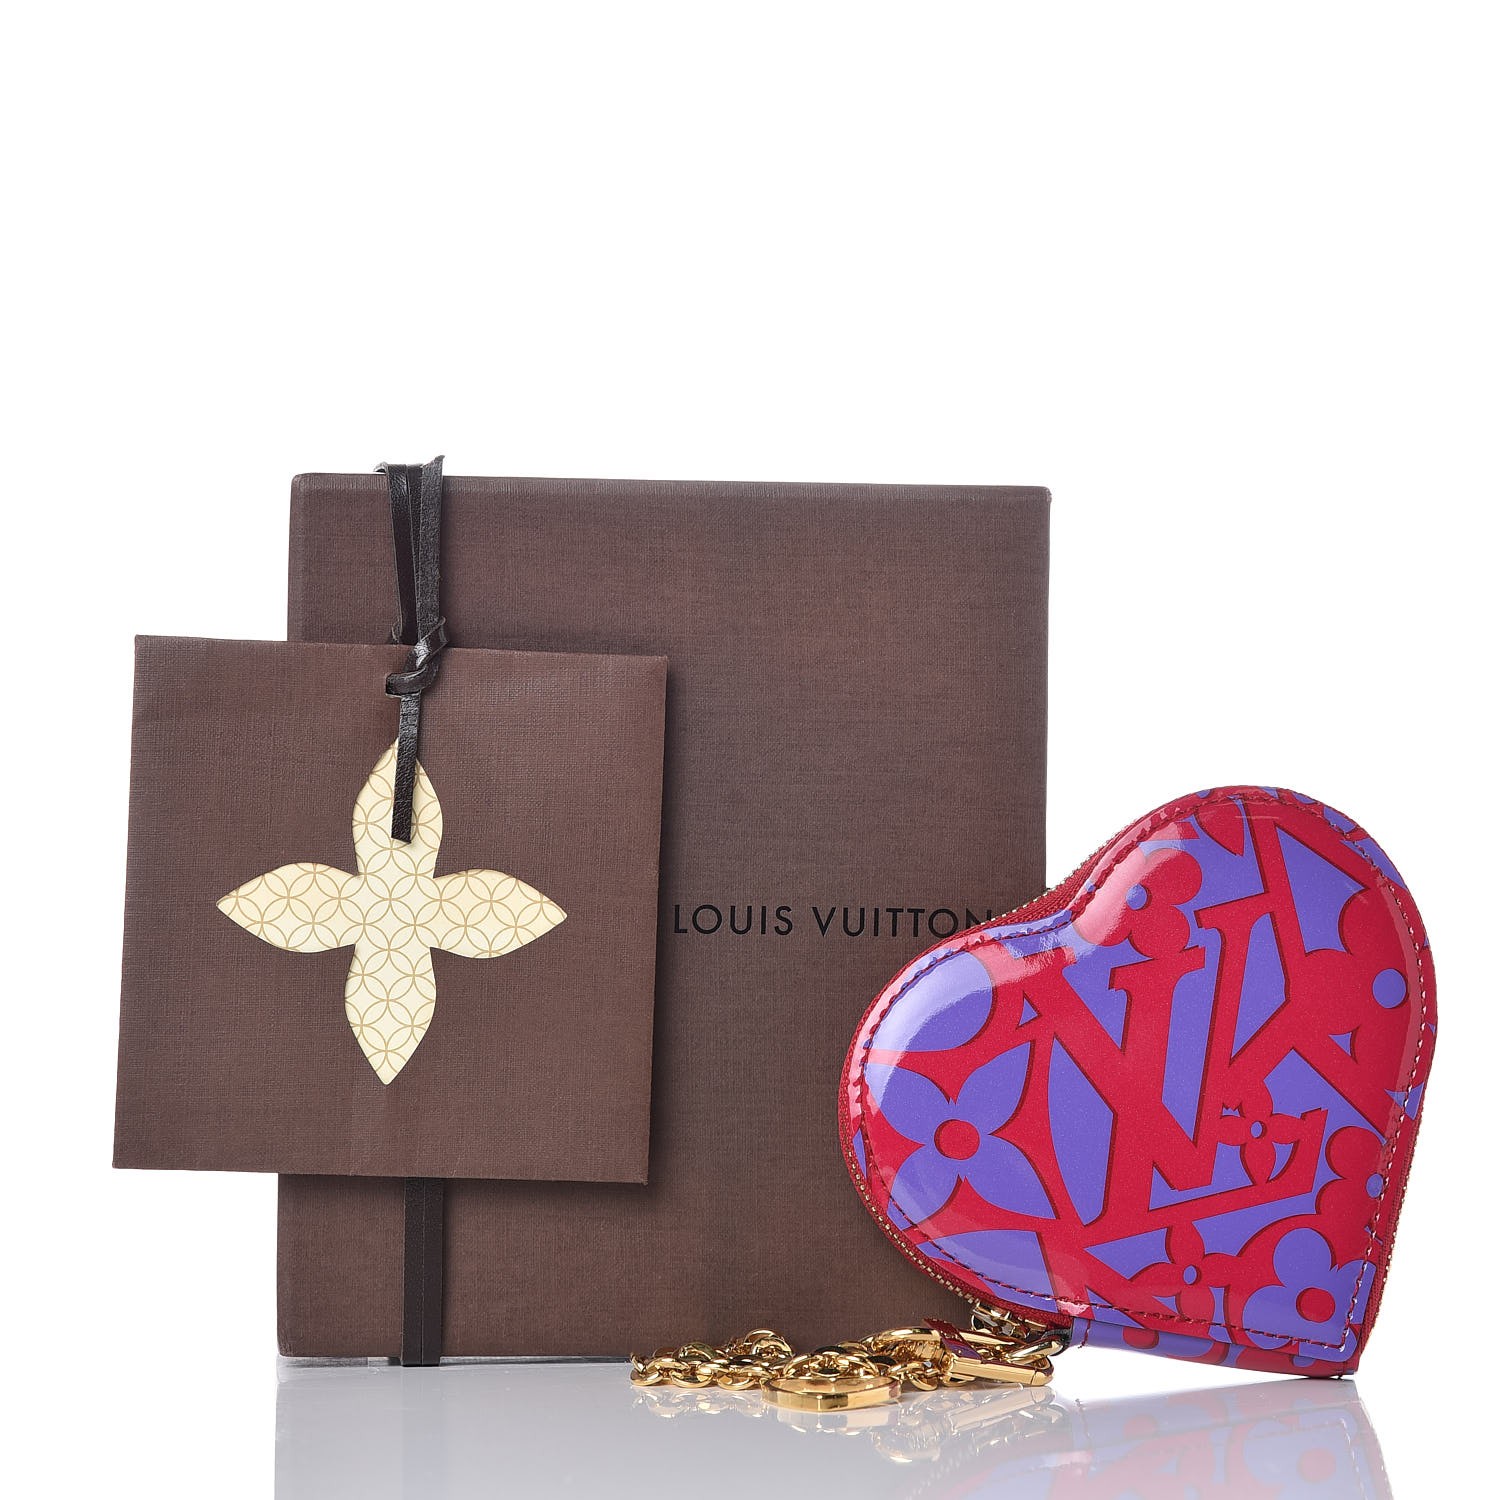 Authentic Louis Vuitton Gold Monogram heart Earrings 3 Set 3cm